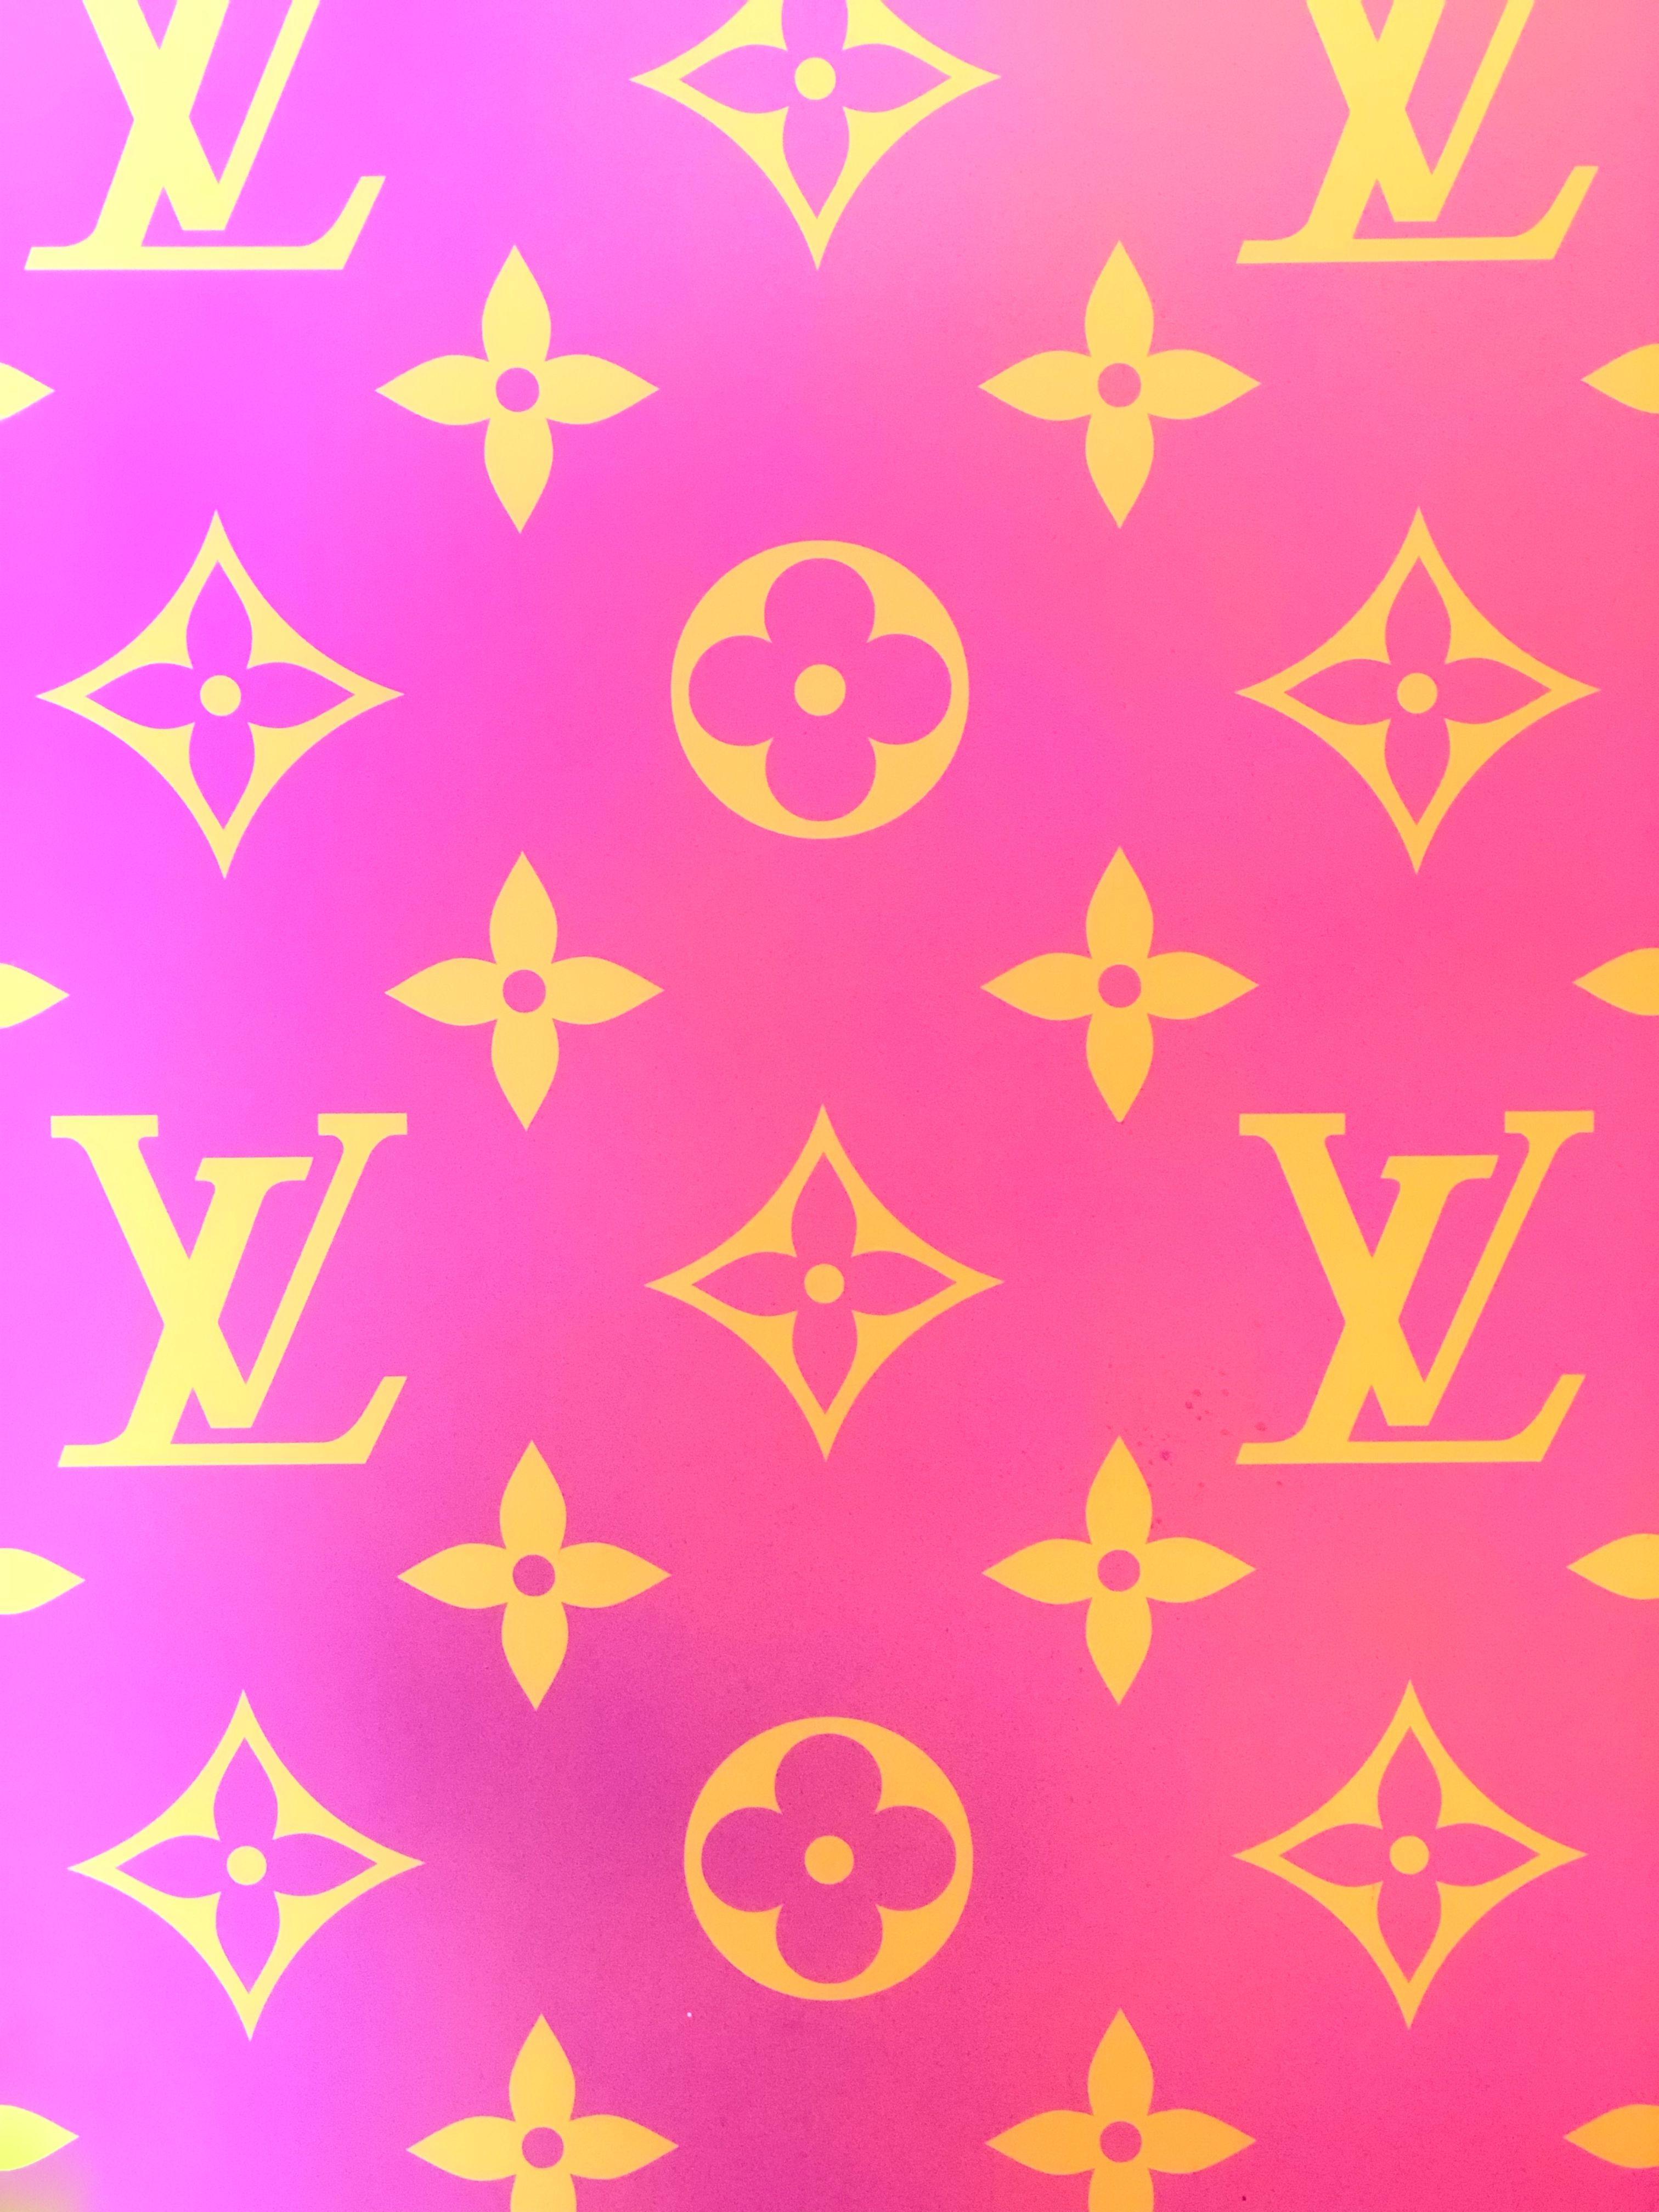 Pink Louis Vuitton Wallpaper - EnWallpaper